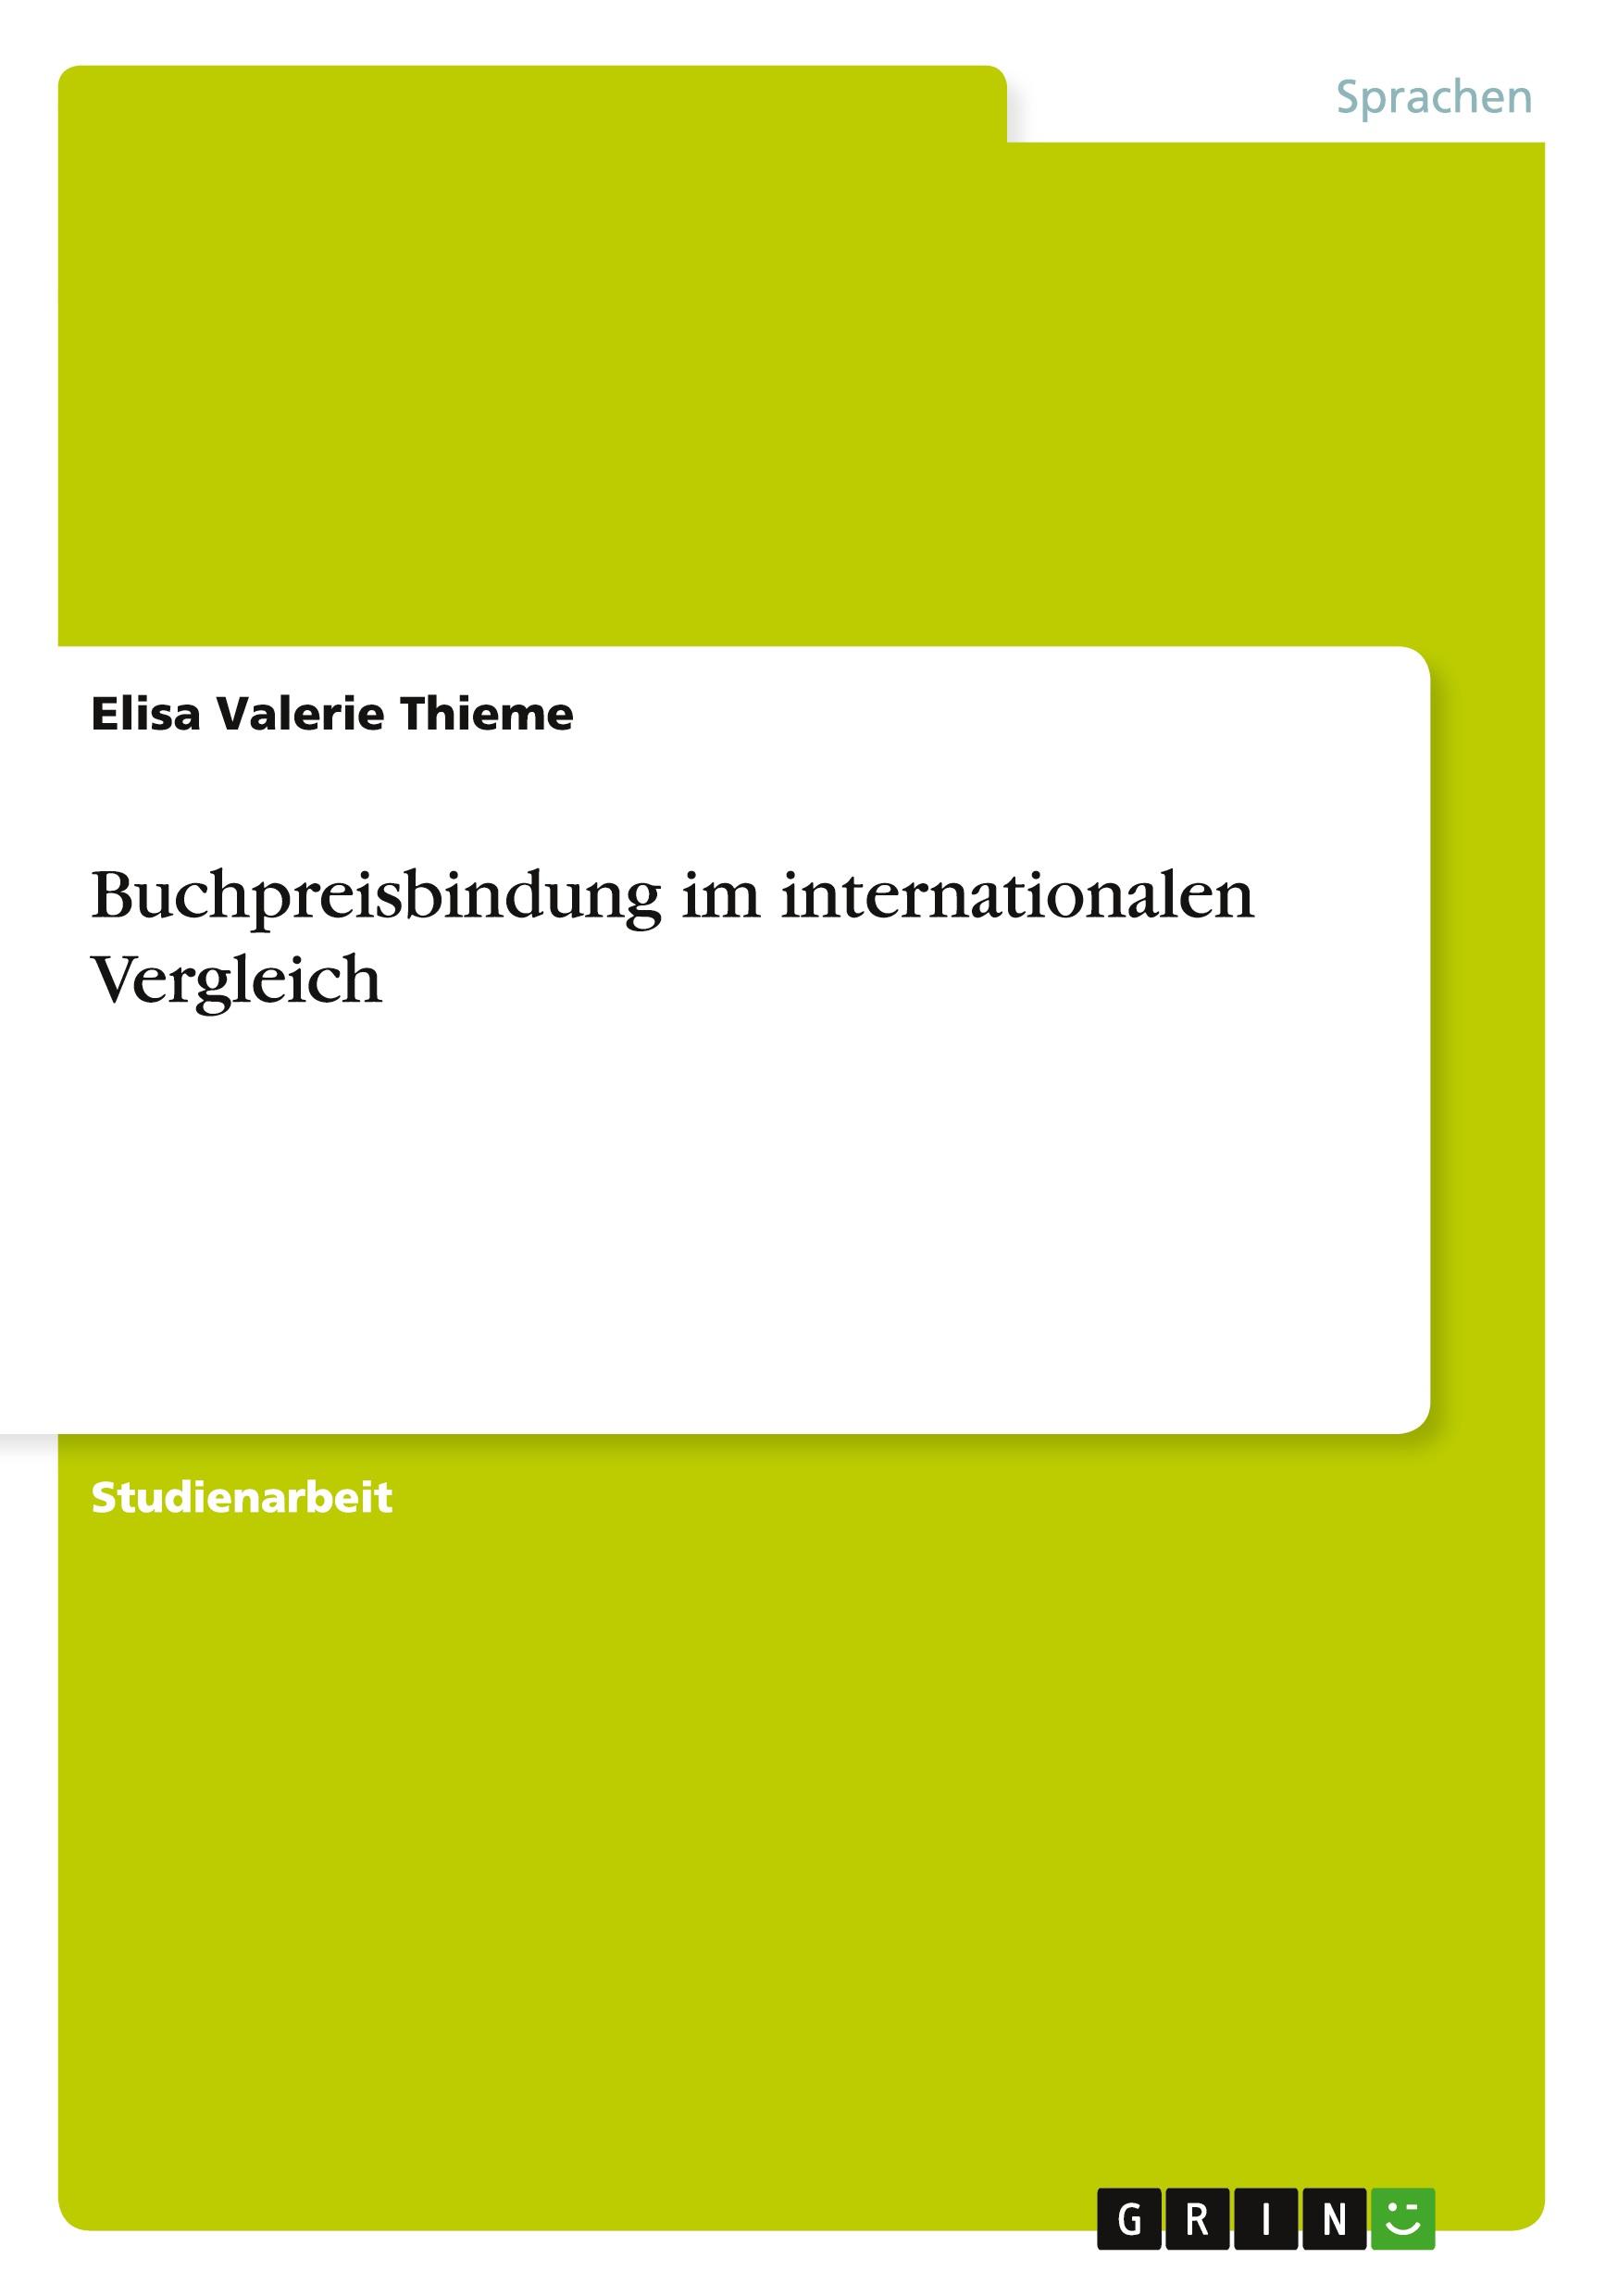 Buchpreisbindung im internationalen Vergleich / Elisa Valerie Thieme / Taschenbuch / Booklet / 20 S. / Deutsch / 2014 / GRIN Verlag / EAN 9783656828419 - Thieme, Elisa Valerie